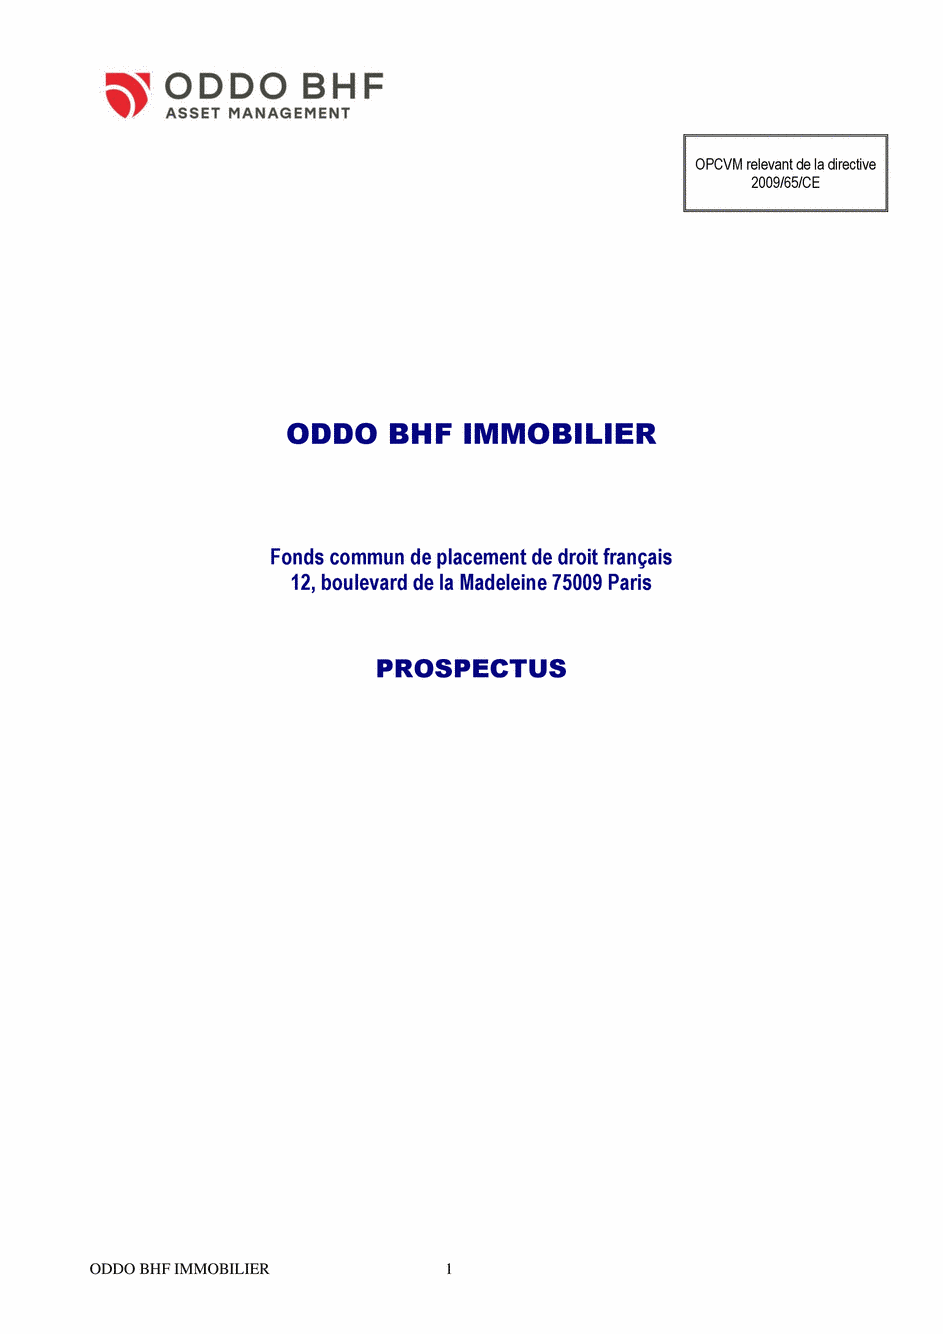 Prospectus ODDO BHF IMMOBILIER CR-EUR - 31/12/2020 - Français